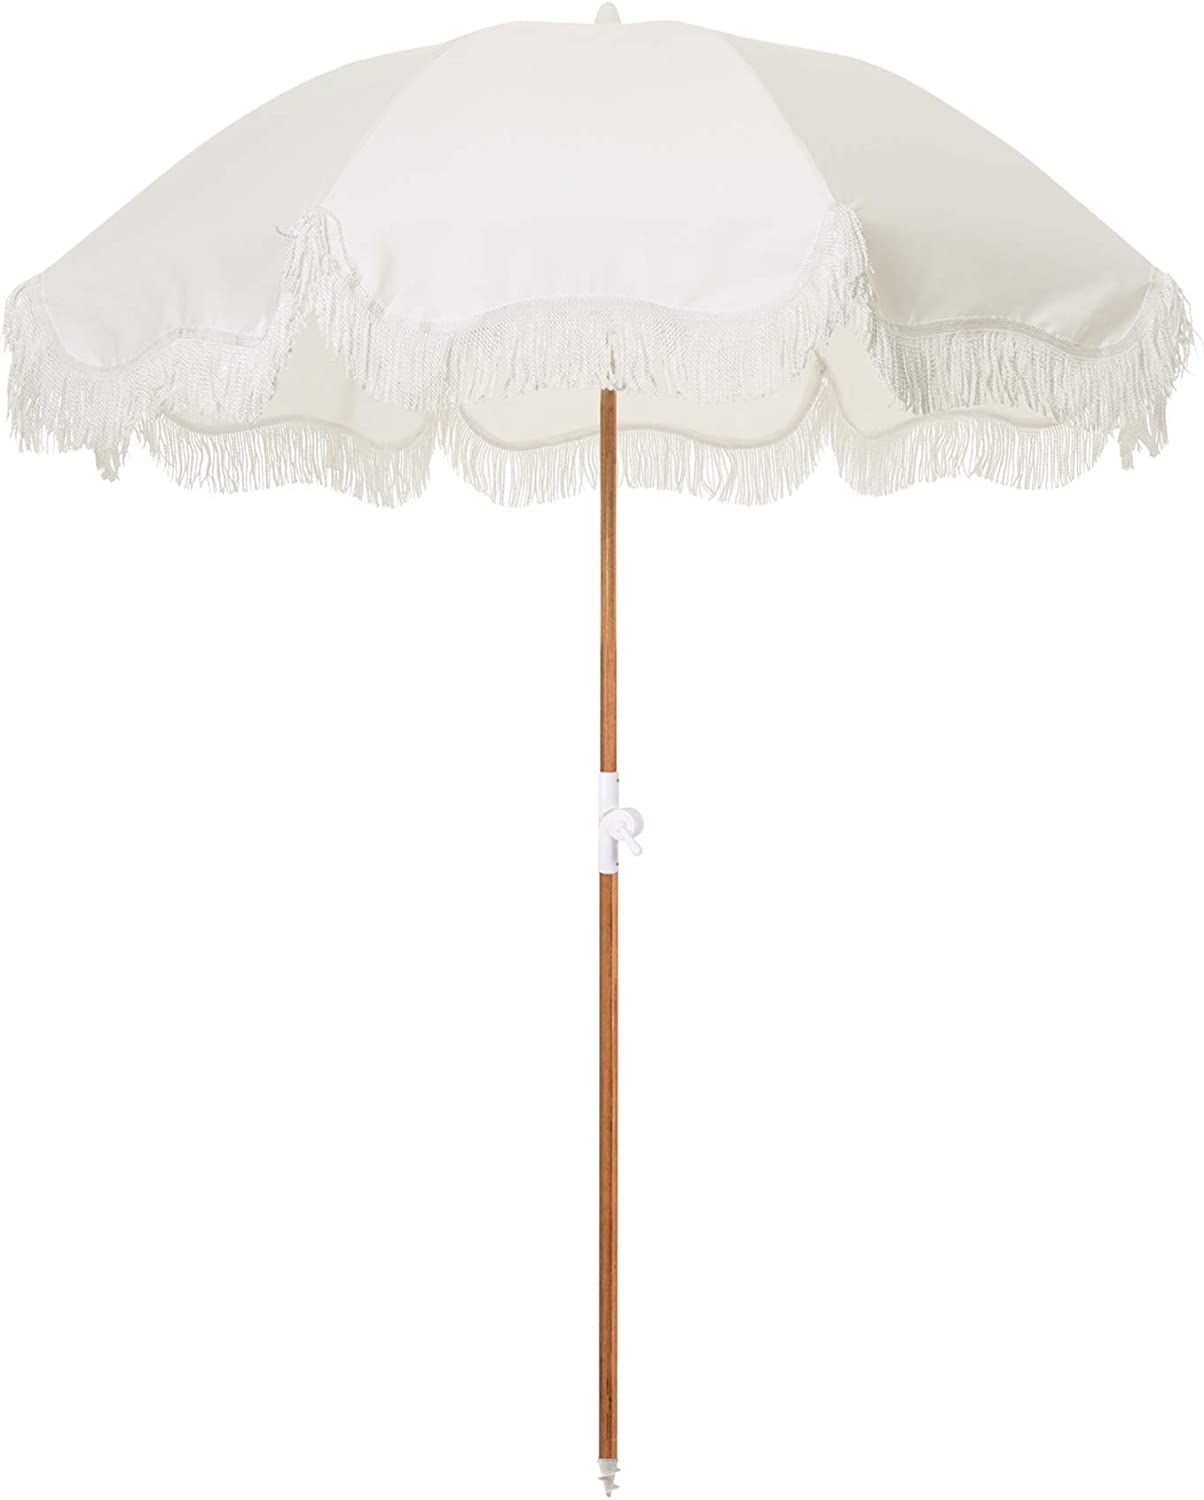 Business & Pleasure Co. Holiday Umbrella - White Boho Beach Umbrella with Fringe - UPF 50+ Blocks... | Amazon (US)